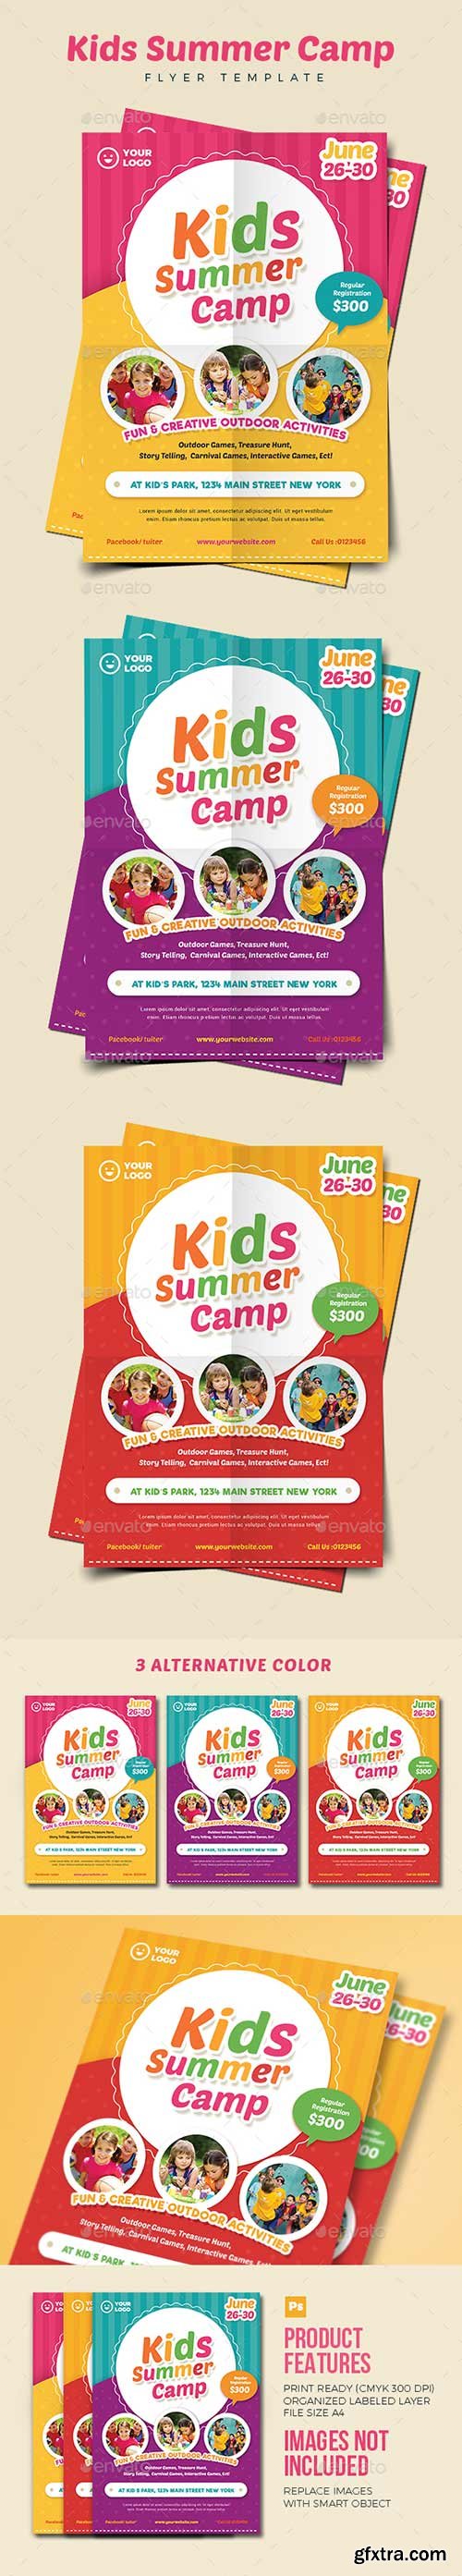 Graphicriver - Kids Summer Camp Flyer 02 20047141